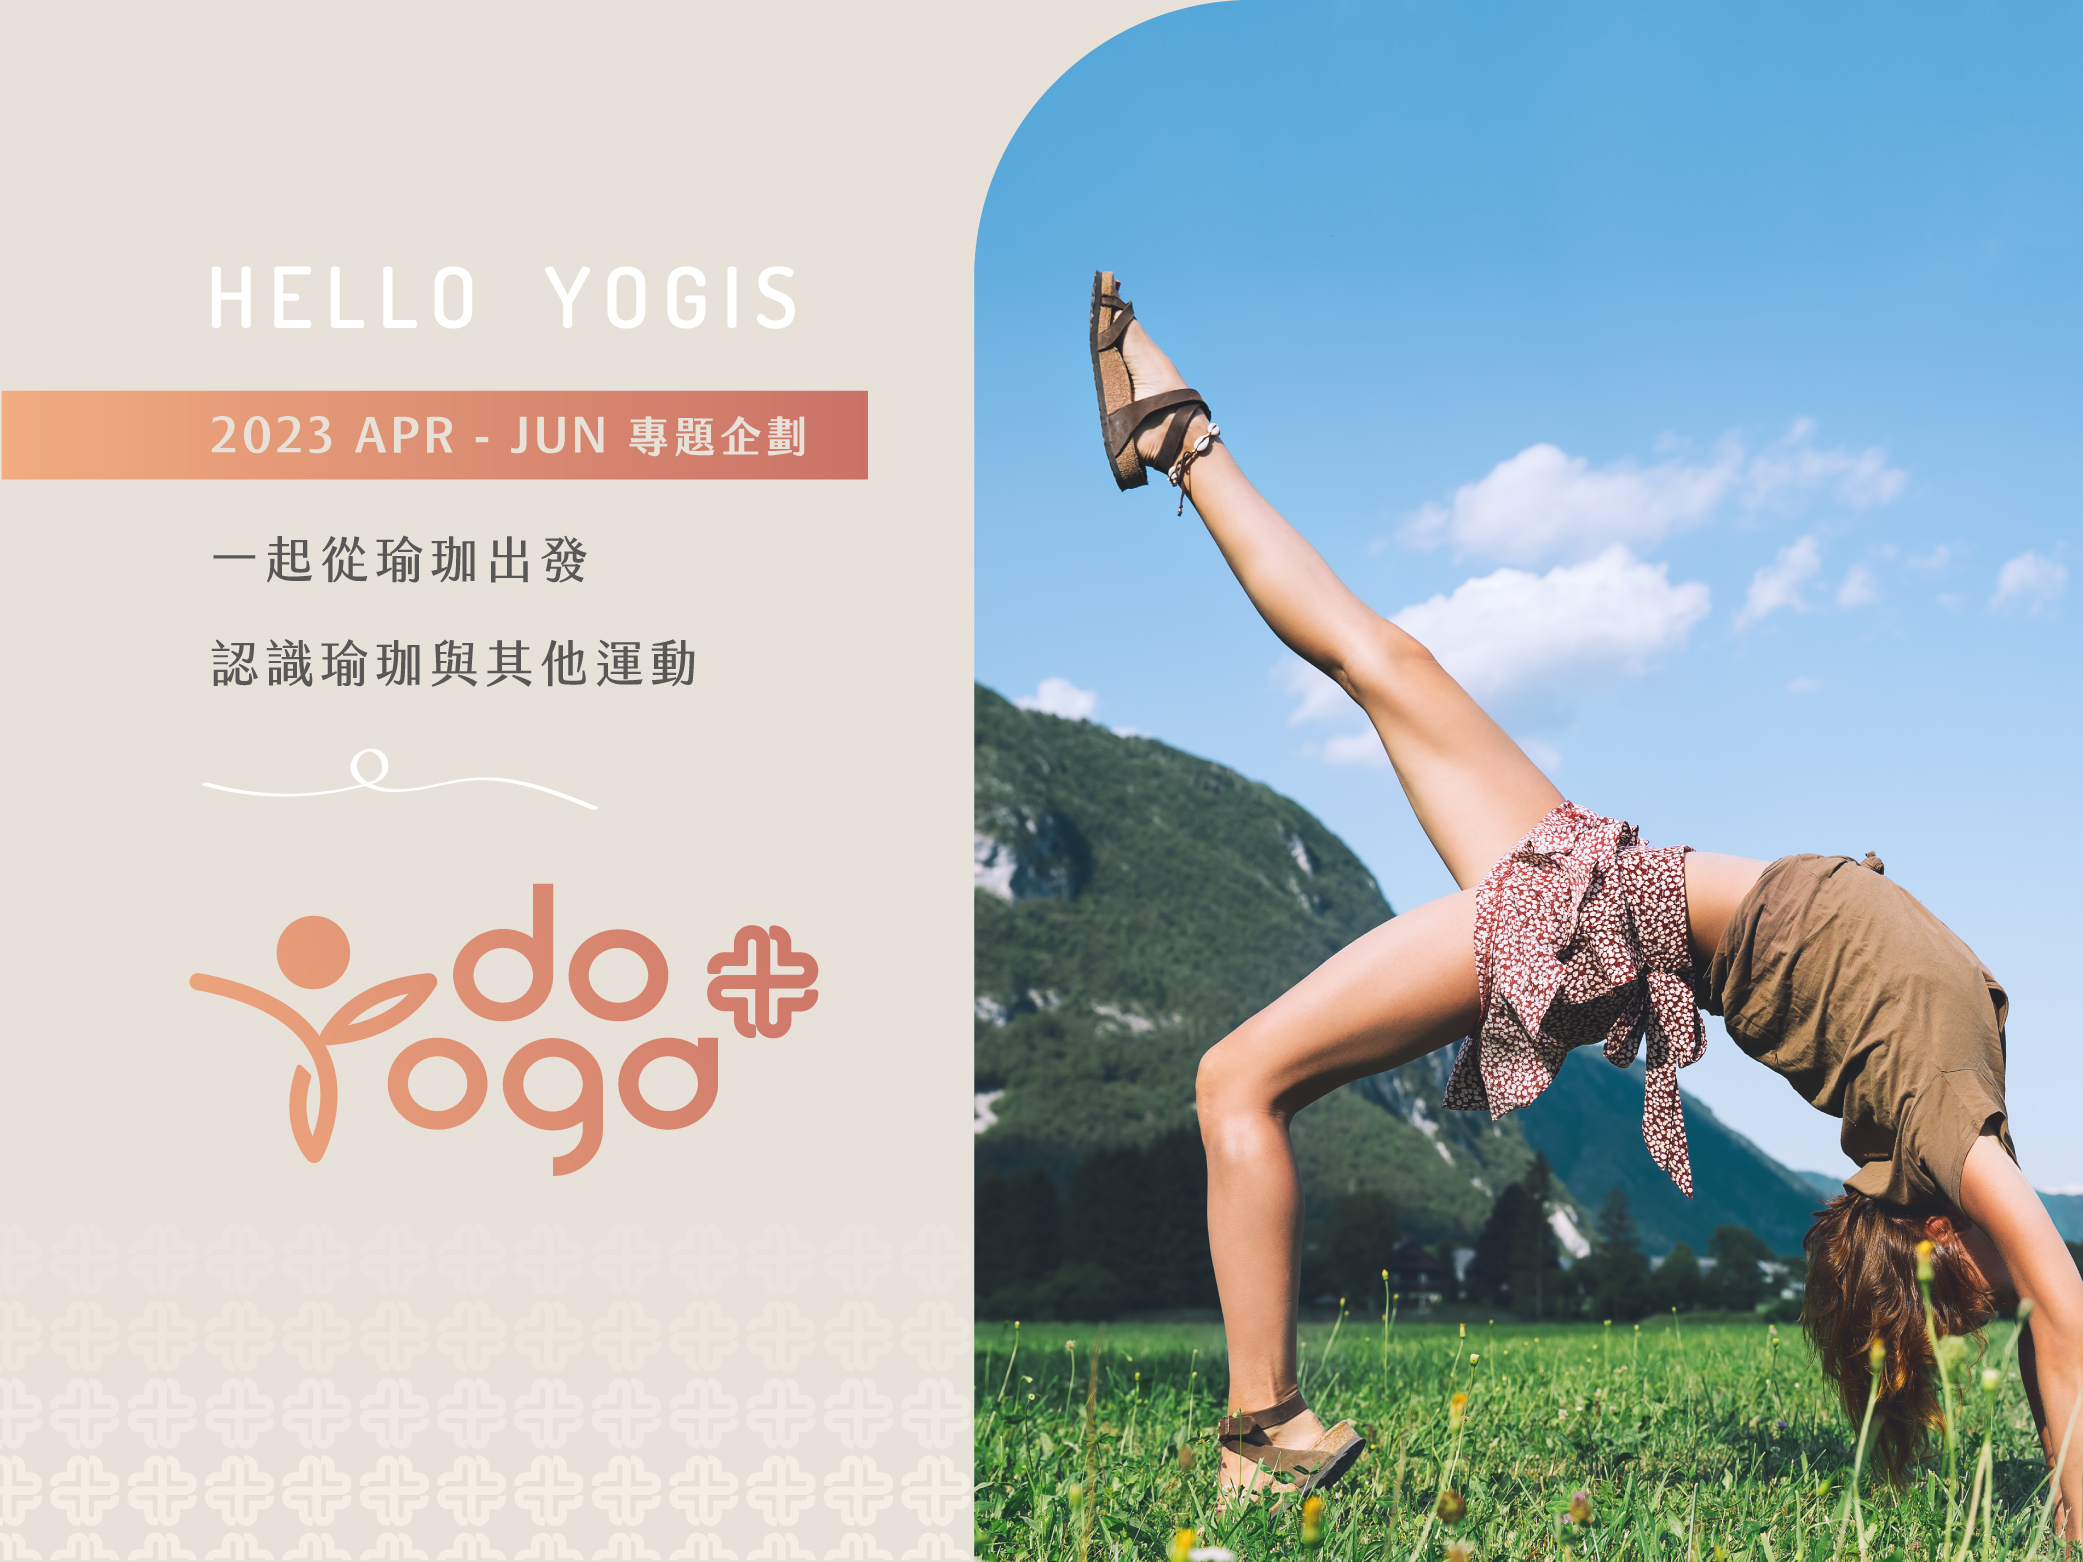 54 doyoga 企劃首圖 edit 01 瑜珈,做瑜珈,《DO YOGA+》,瑜珈企劃,瑜珈專題